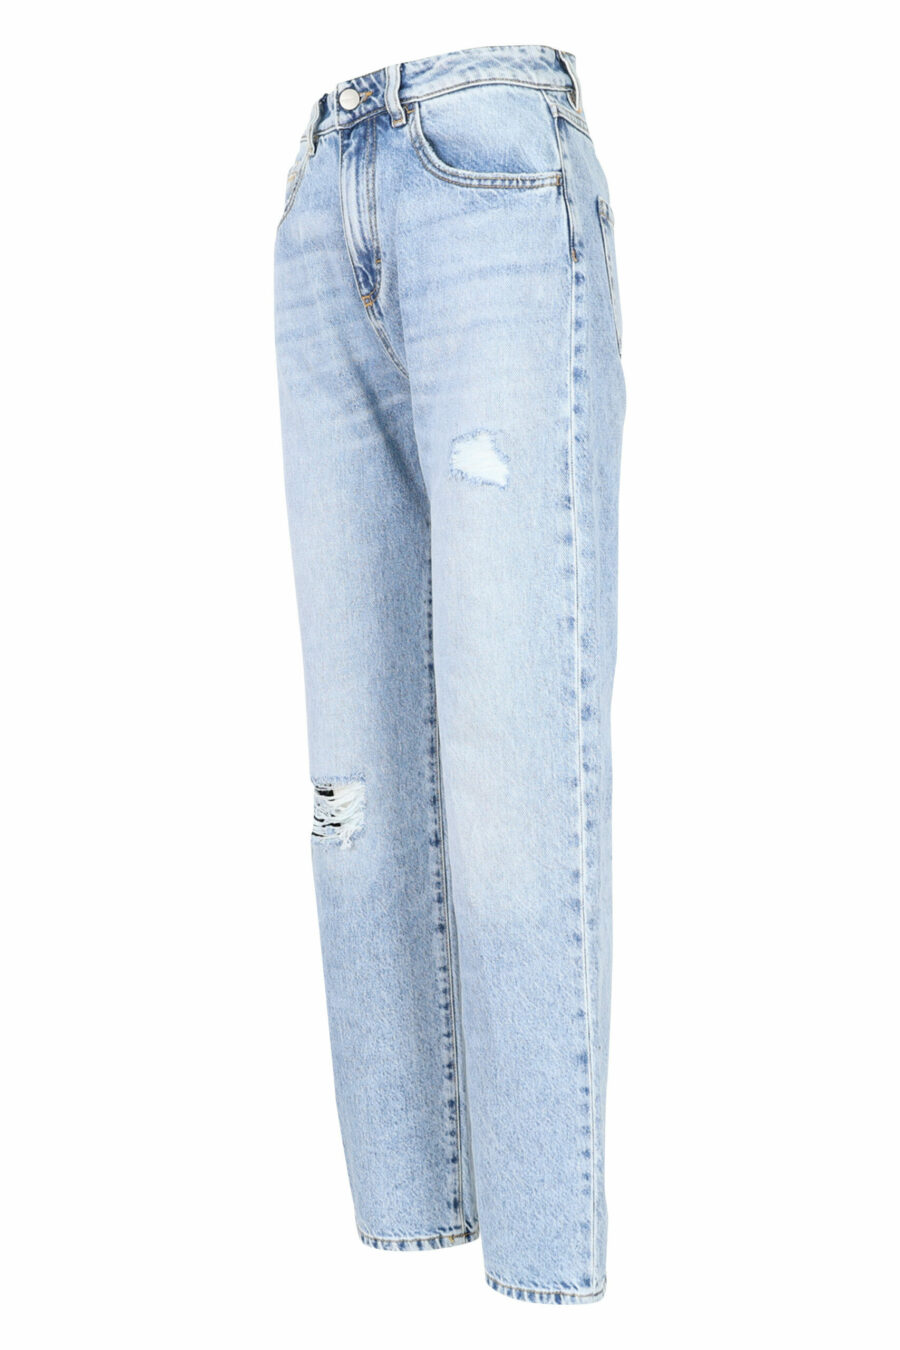 Pantalon en denim bleu "bella" avec minirotos - 8052691165867 1 échelle